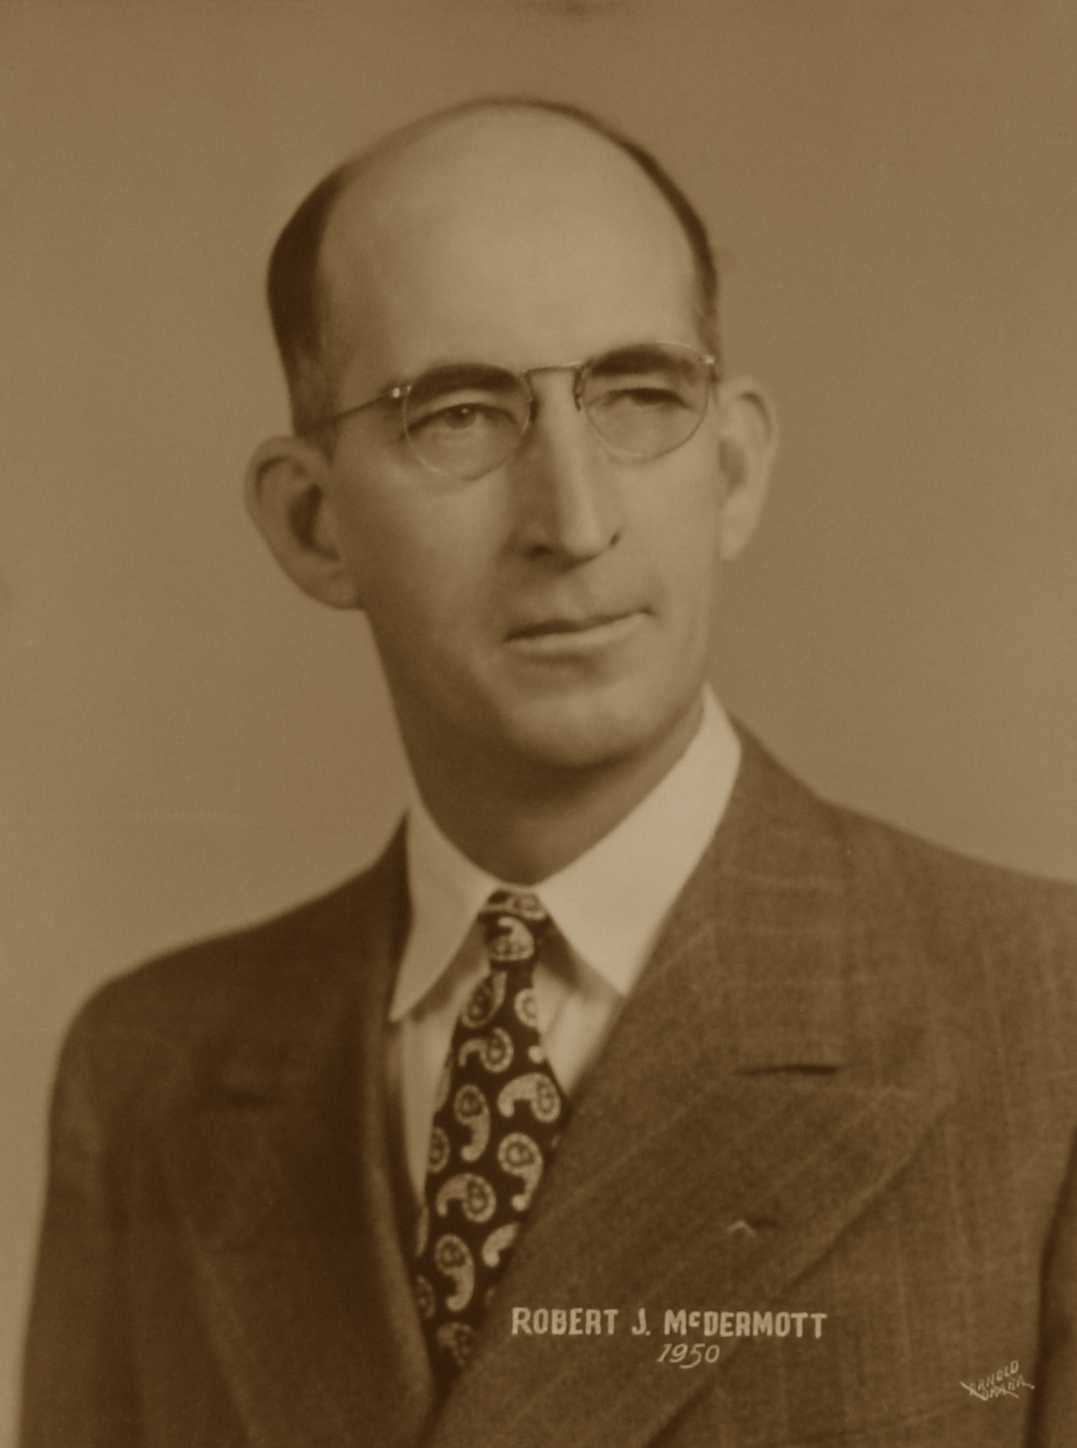 Robert J. McDermott, 1950